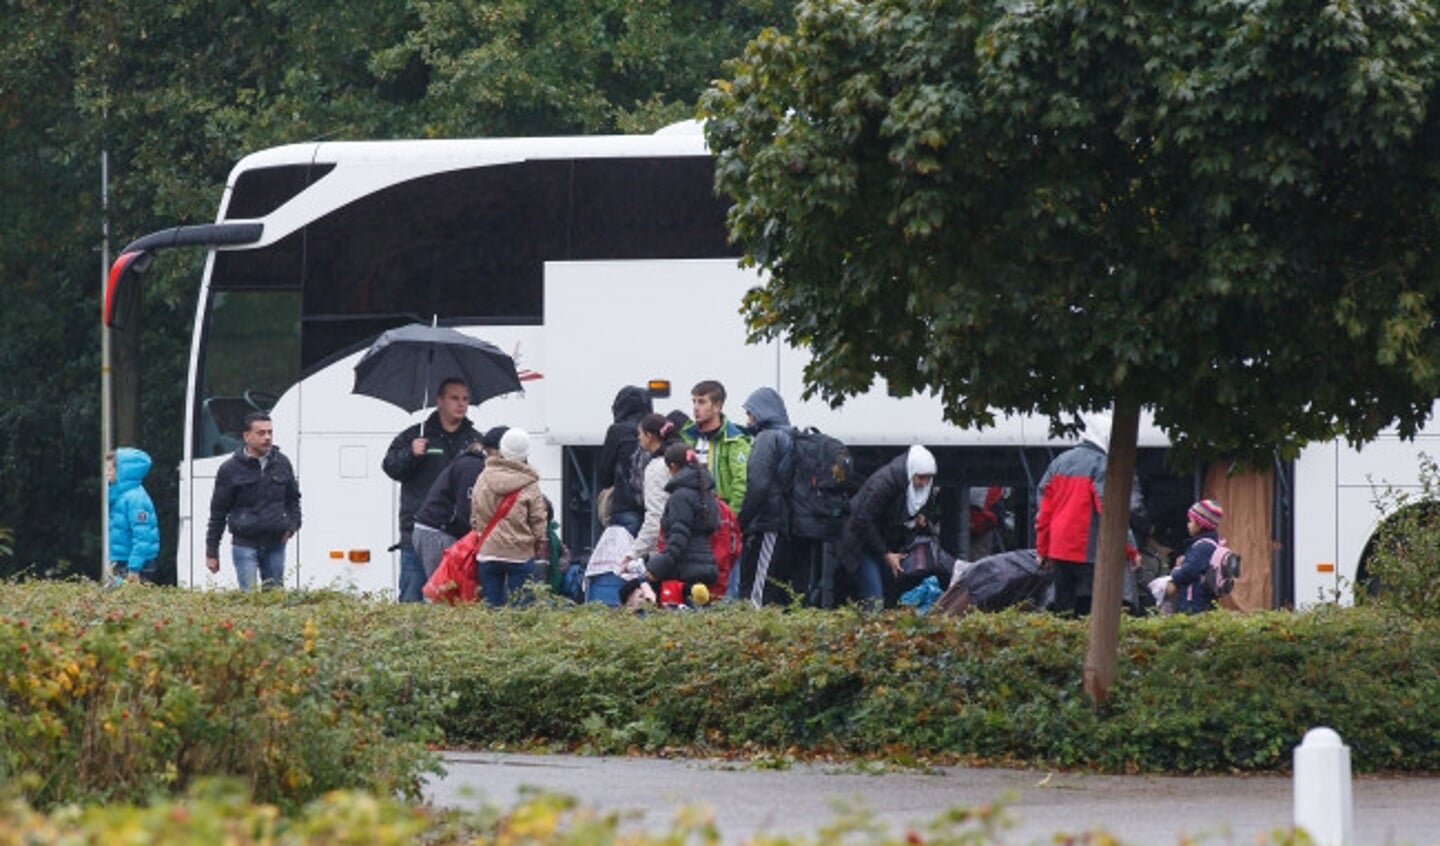  Syrische vluchtelingen die aankomen bij de Hasselter sporthal de Prinsenhof.